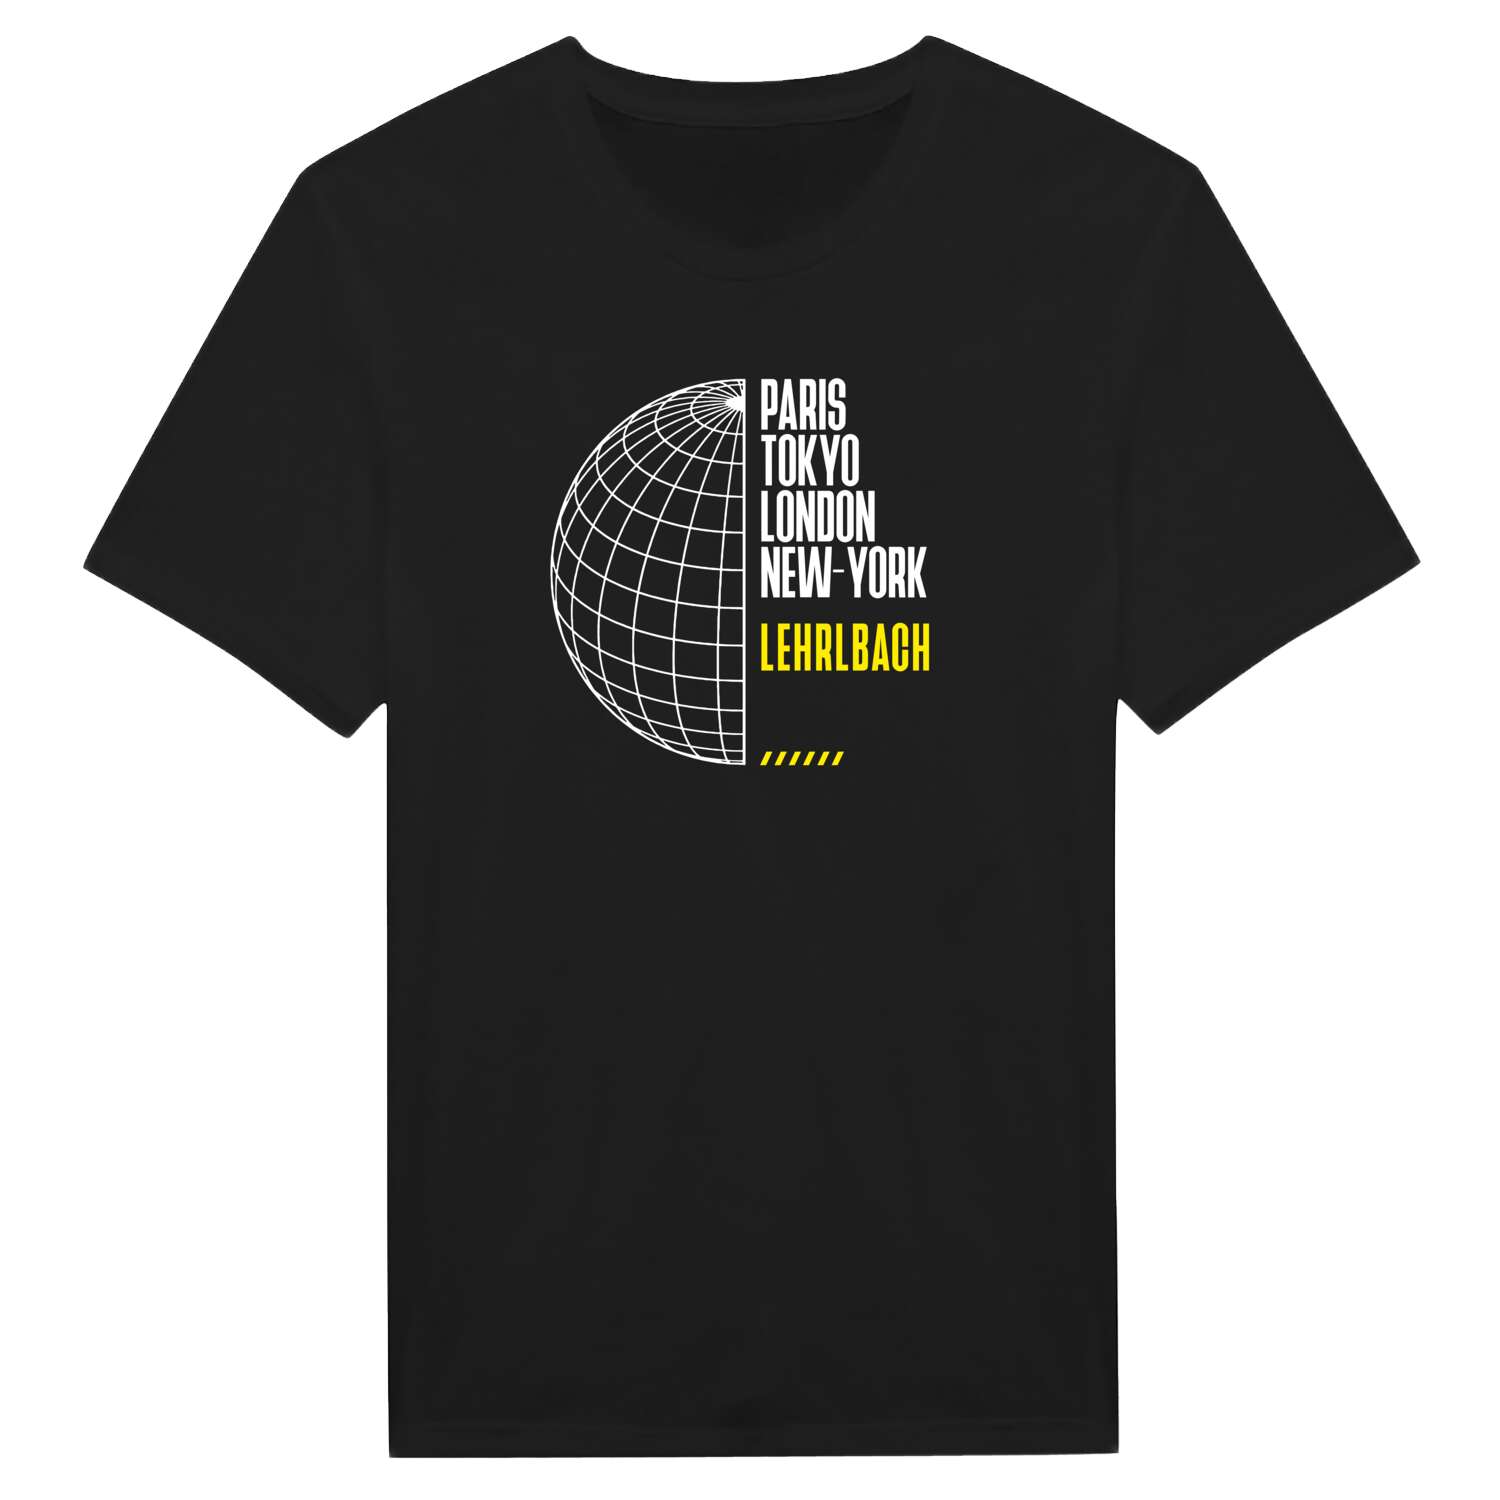 Lehrlbach T-Shirt »Paris Tokyo London«